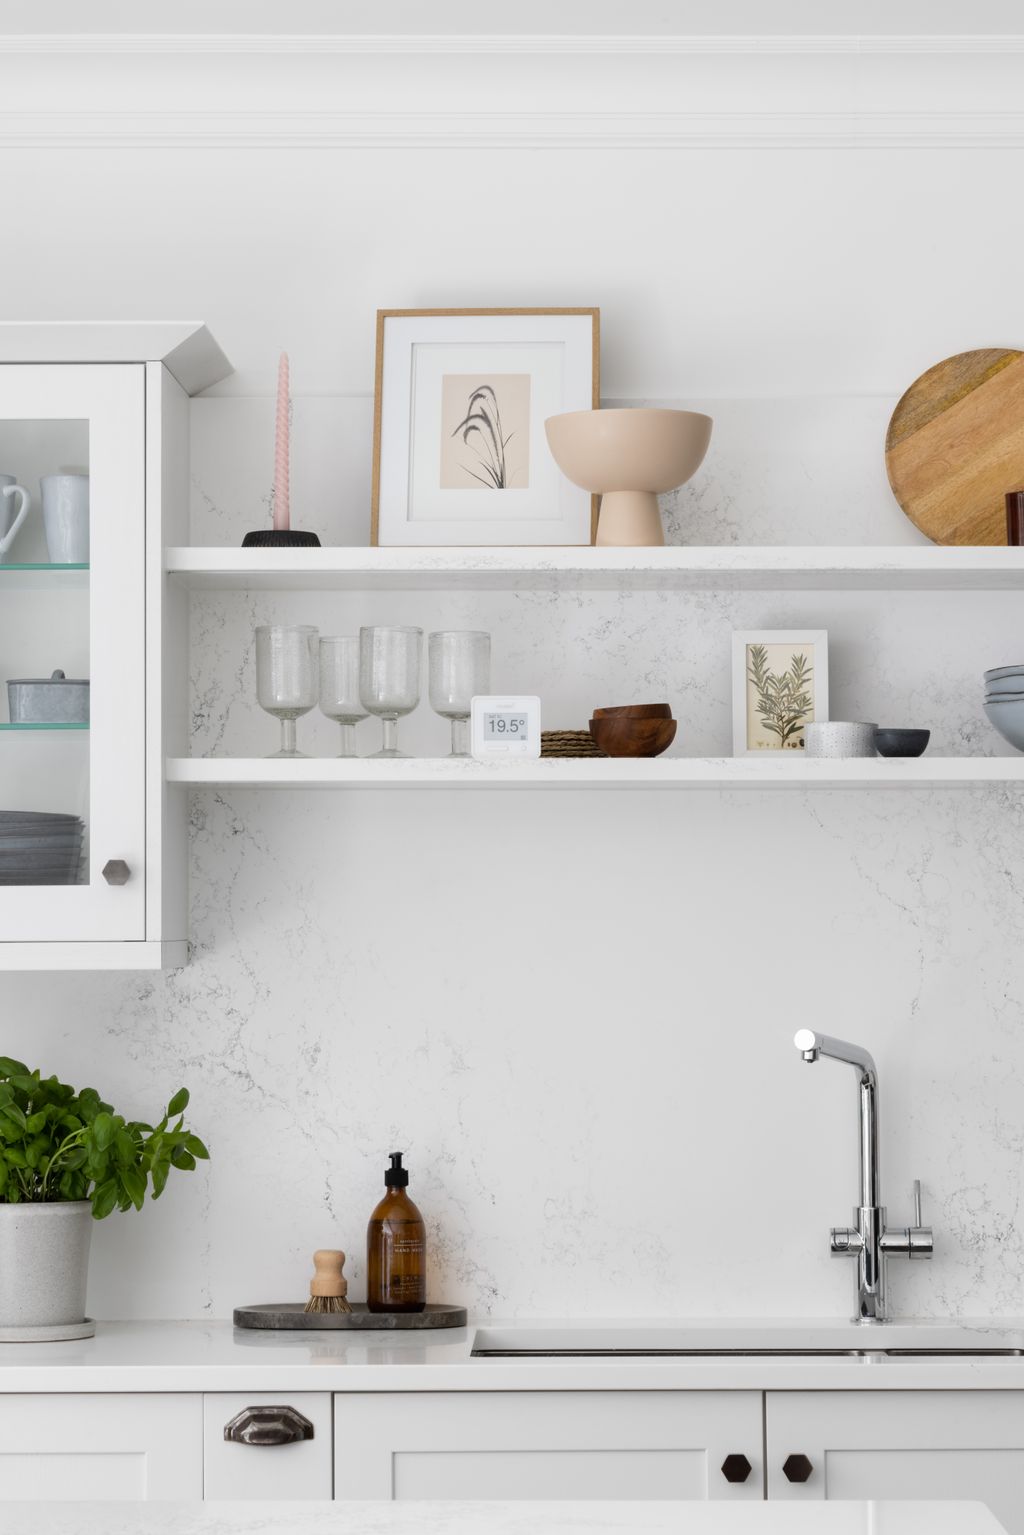 7 Ways to Maximize Kitchen Storage Without Adding Cabinets | Livingetc